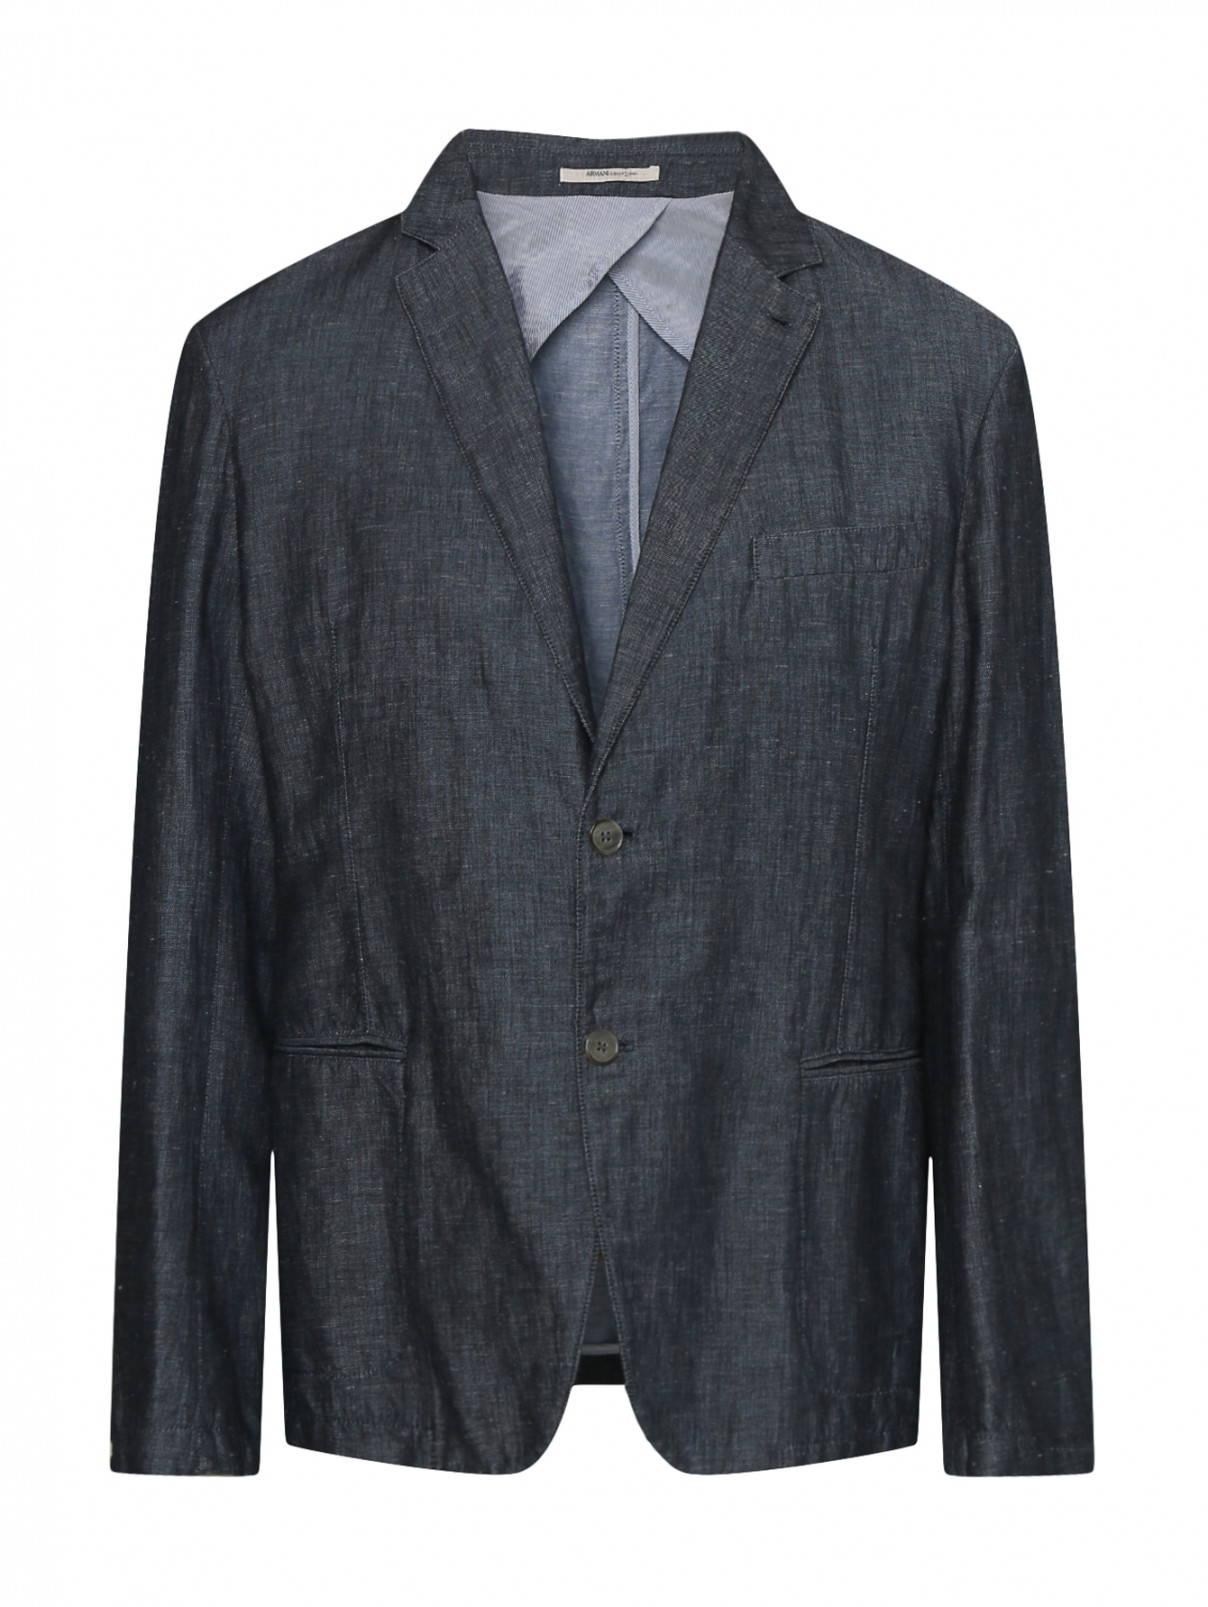 Однобортный пиджак из льна Armani Collezioni  –  Общий вид  – Цвет:  Синий